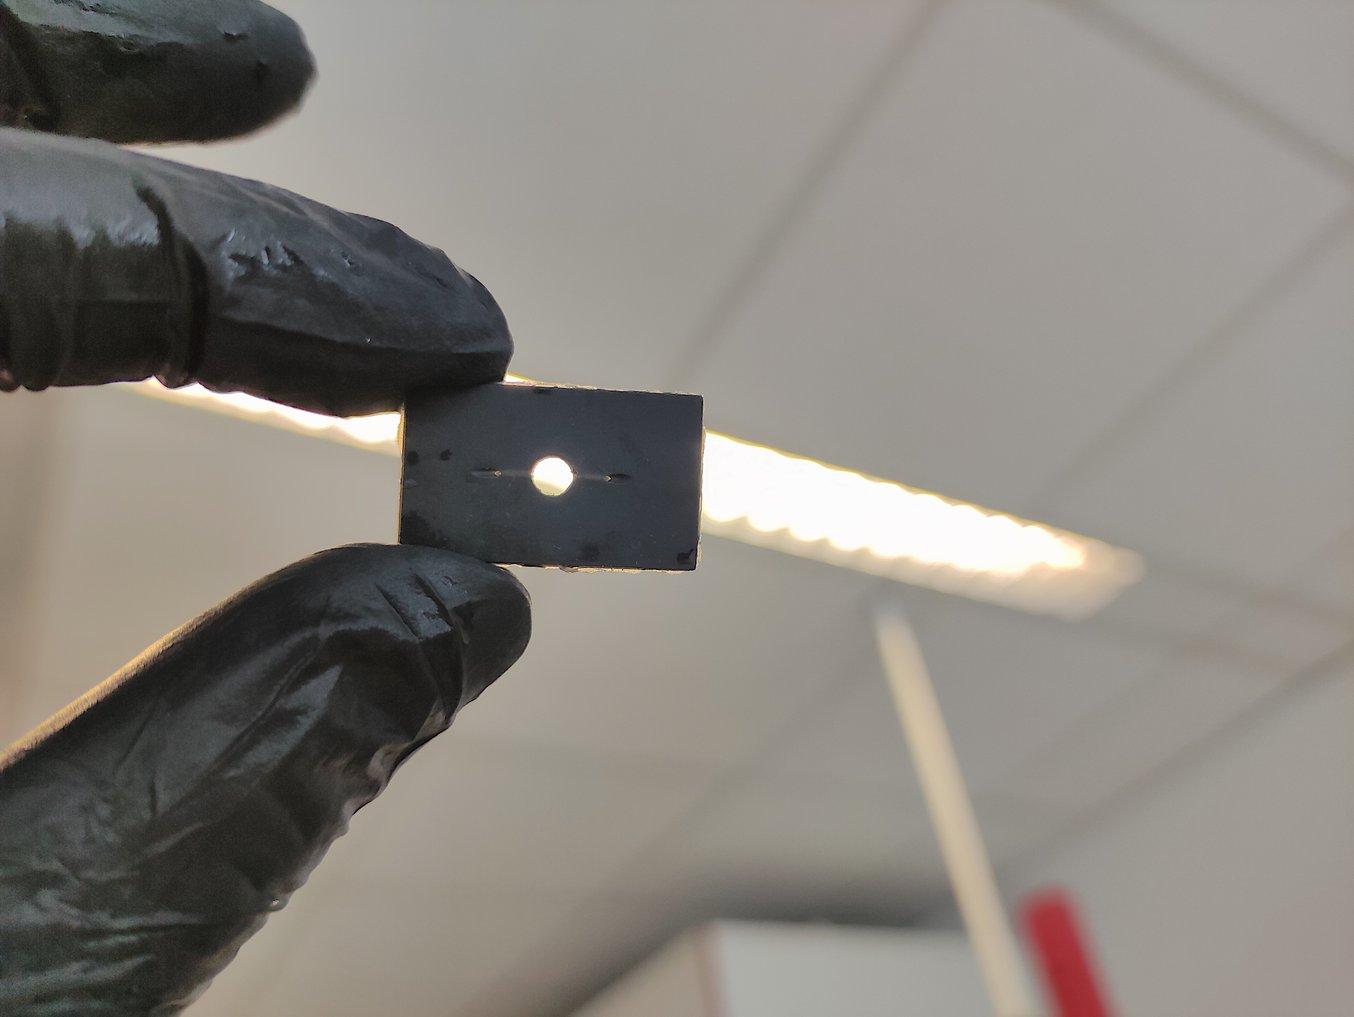 Die 3D-gedruckten molekularen Biochips von Pixelbio bieten Möglichkeiten für eine Vielzahl von neuen Anwendungen und Forschung.